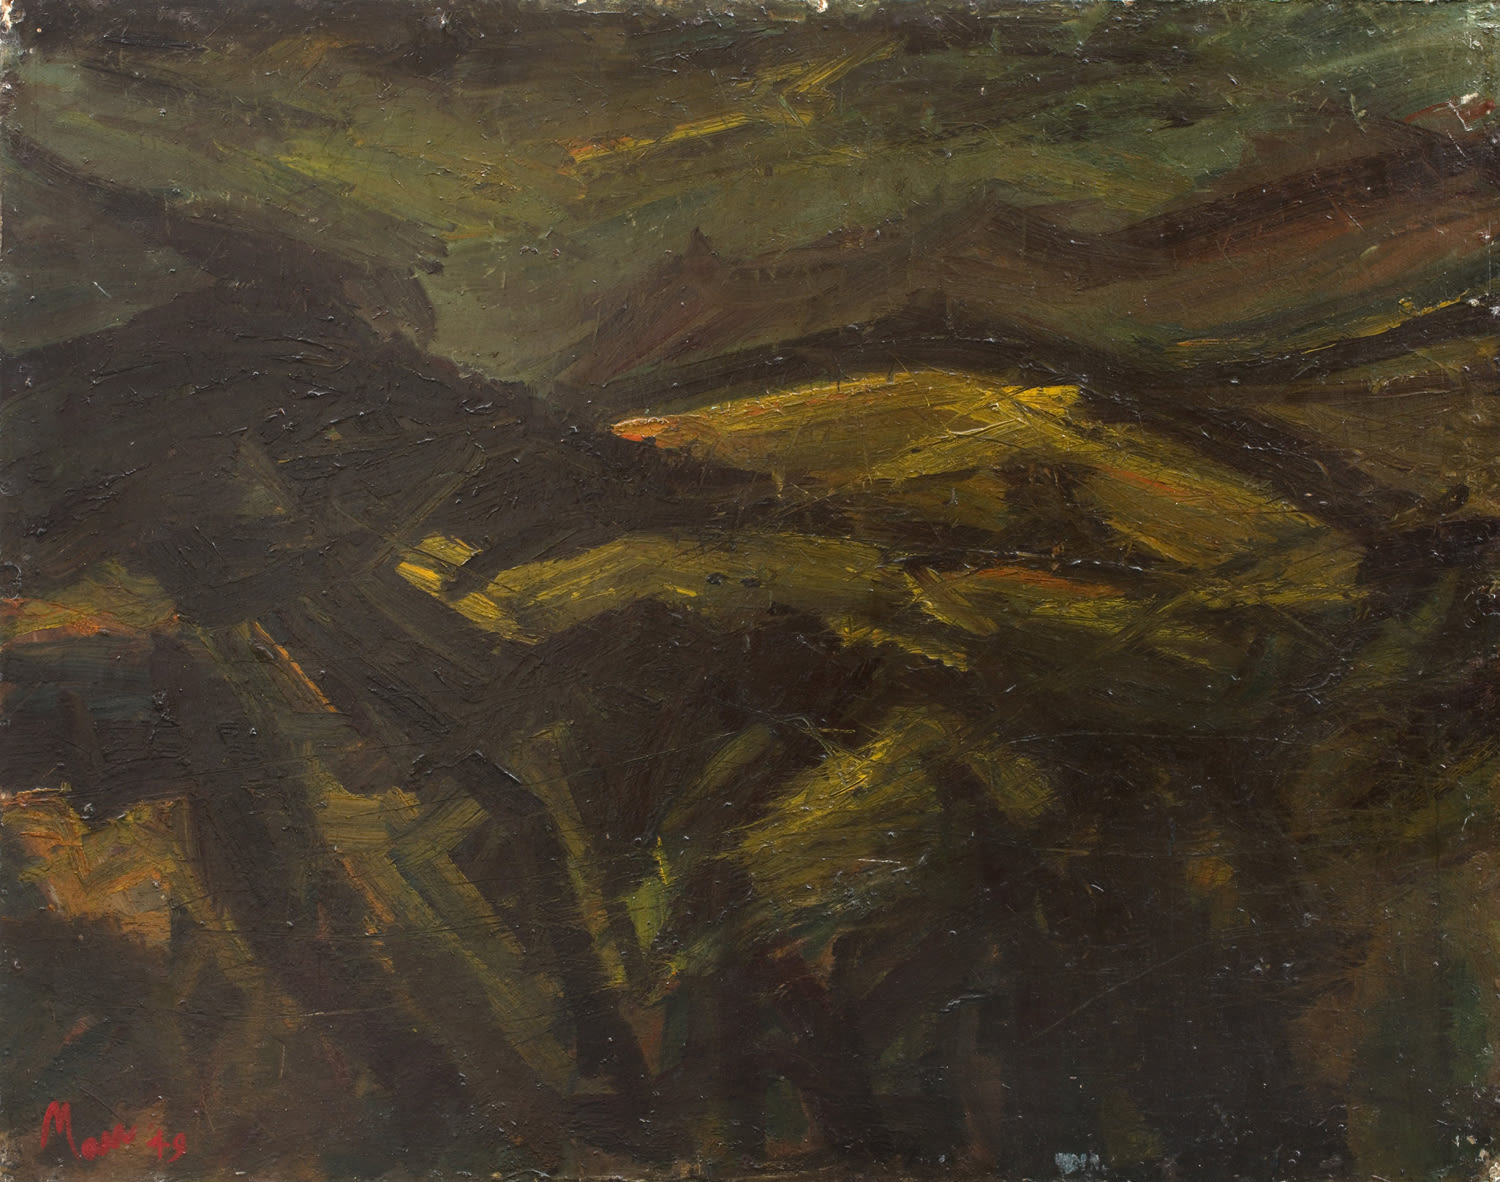 Leslie Marr, Landscape near Beddgelert, 1949